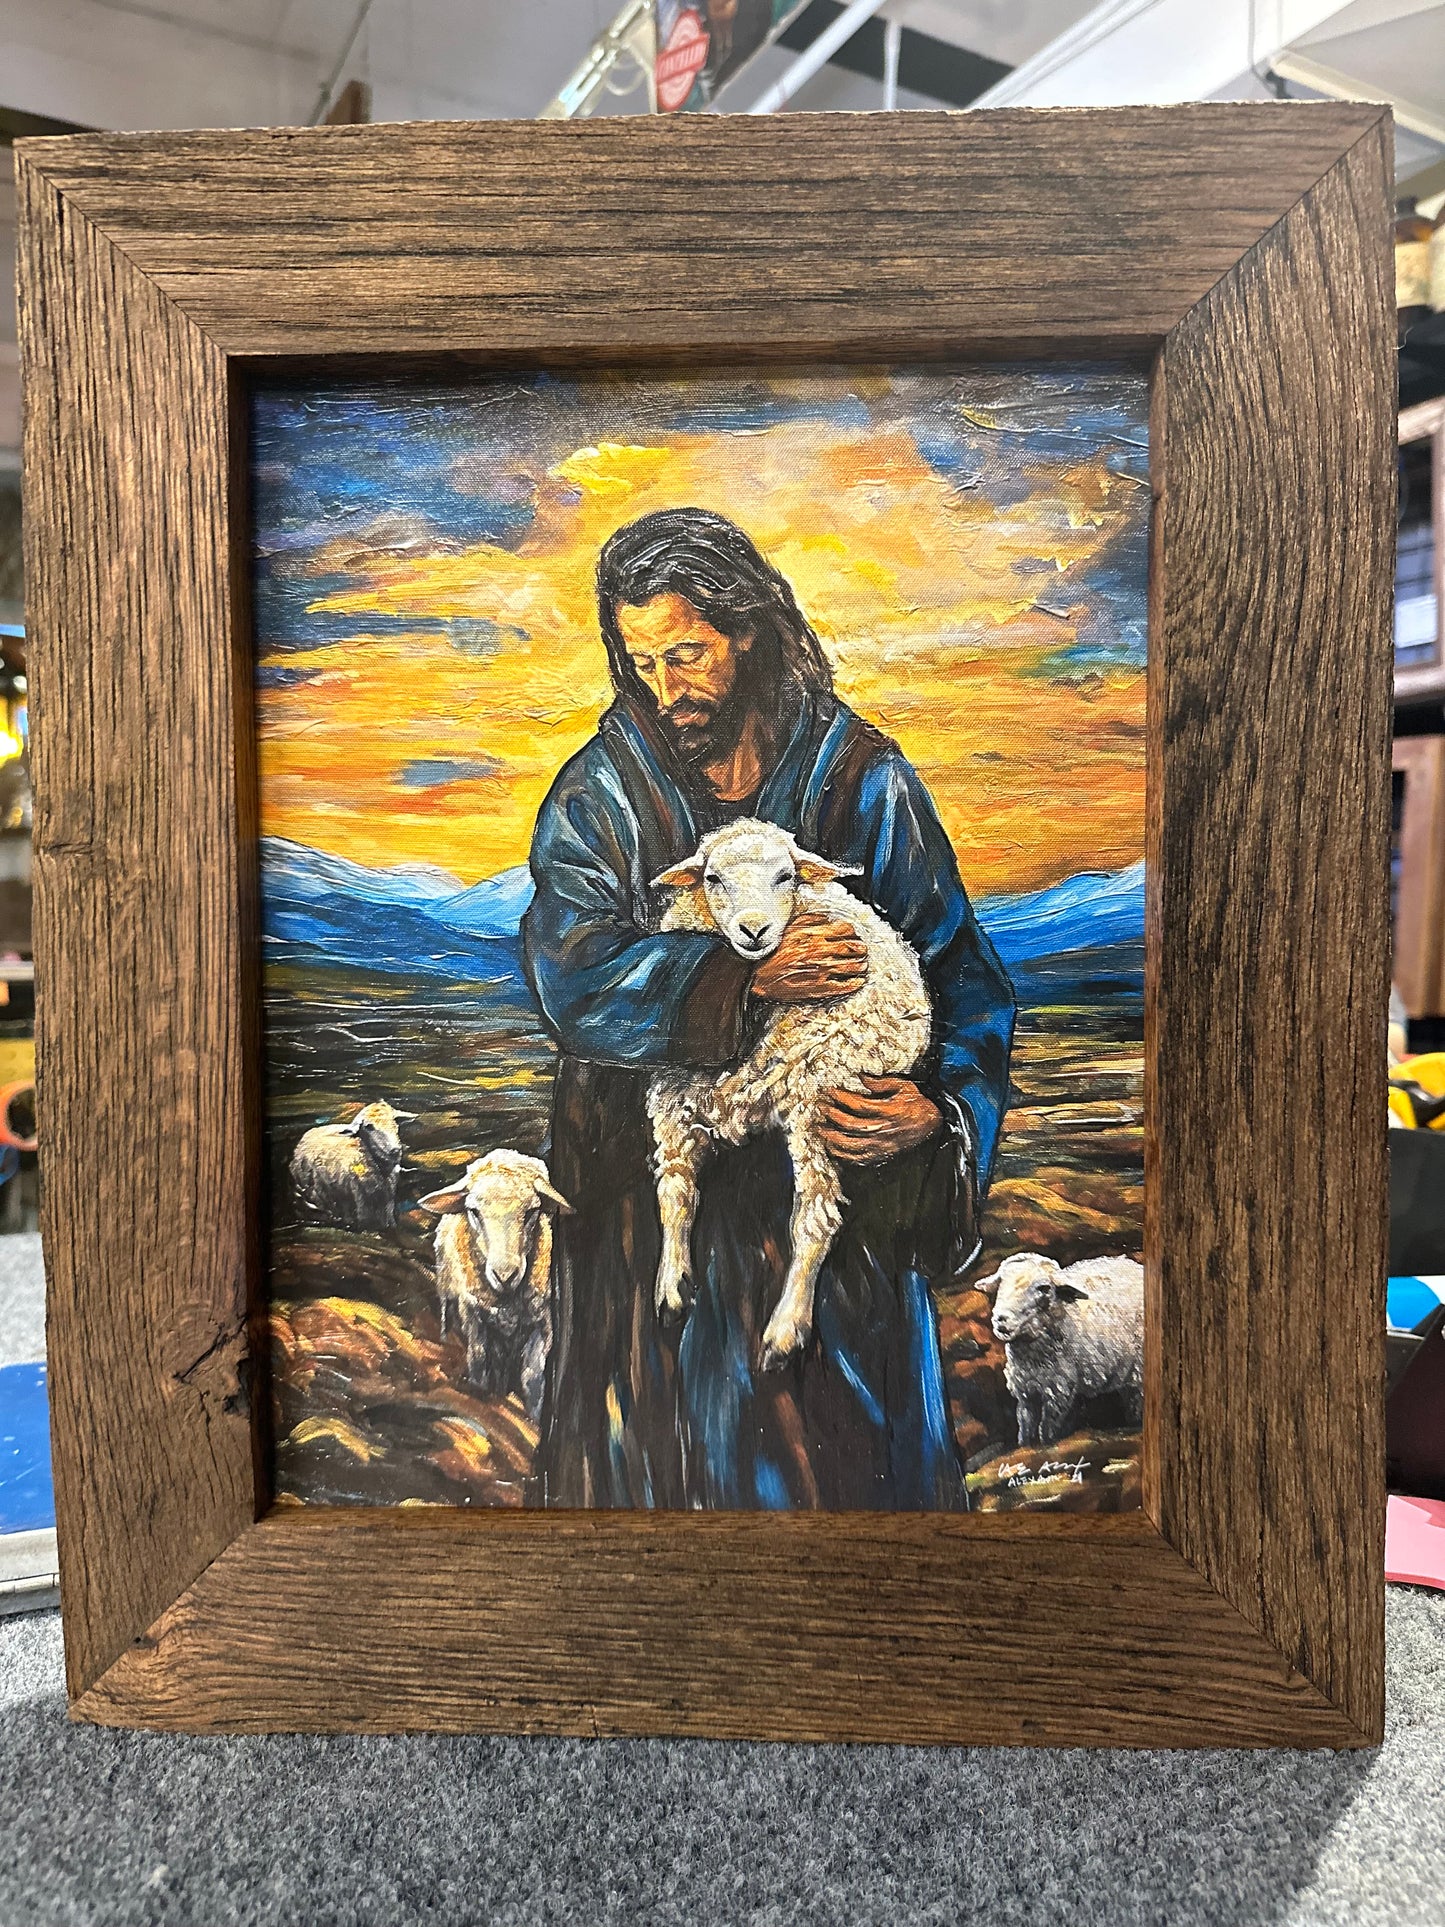 The Good Shepherd (11x14) - ON SALE NOW